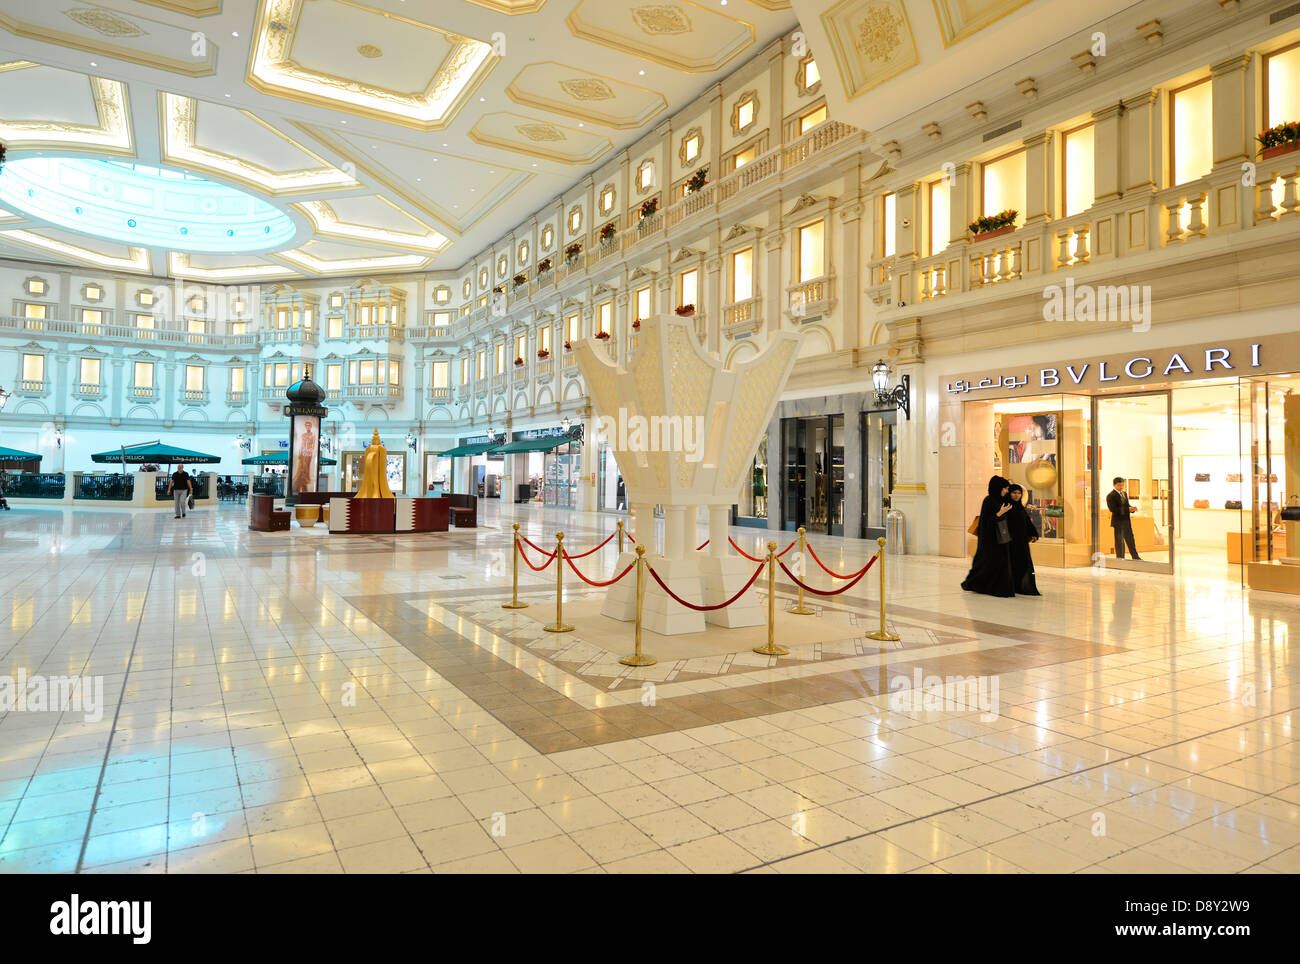 bvlgari mall of qatar